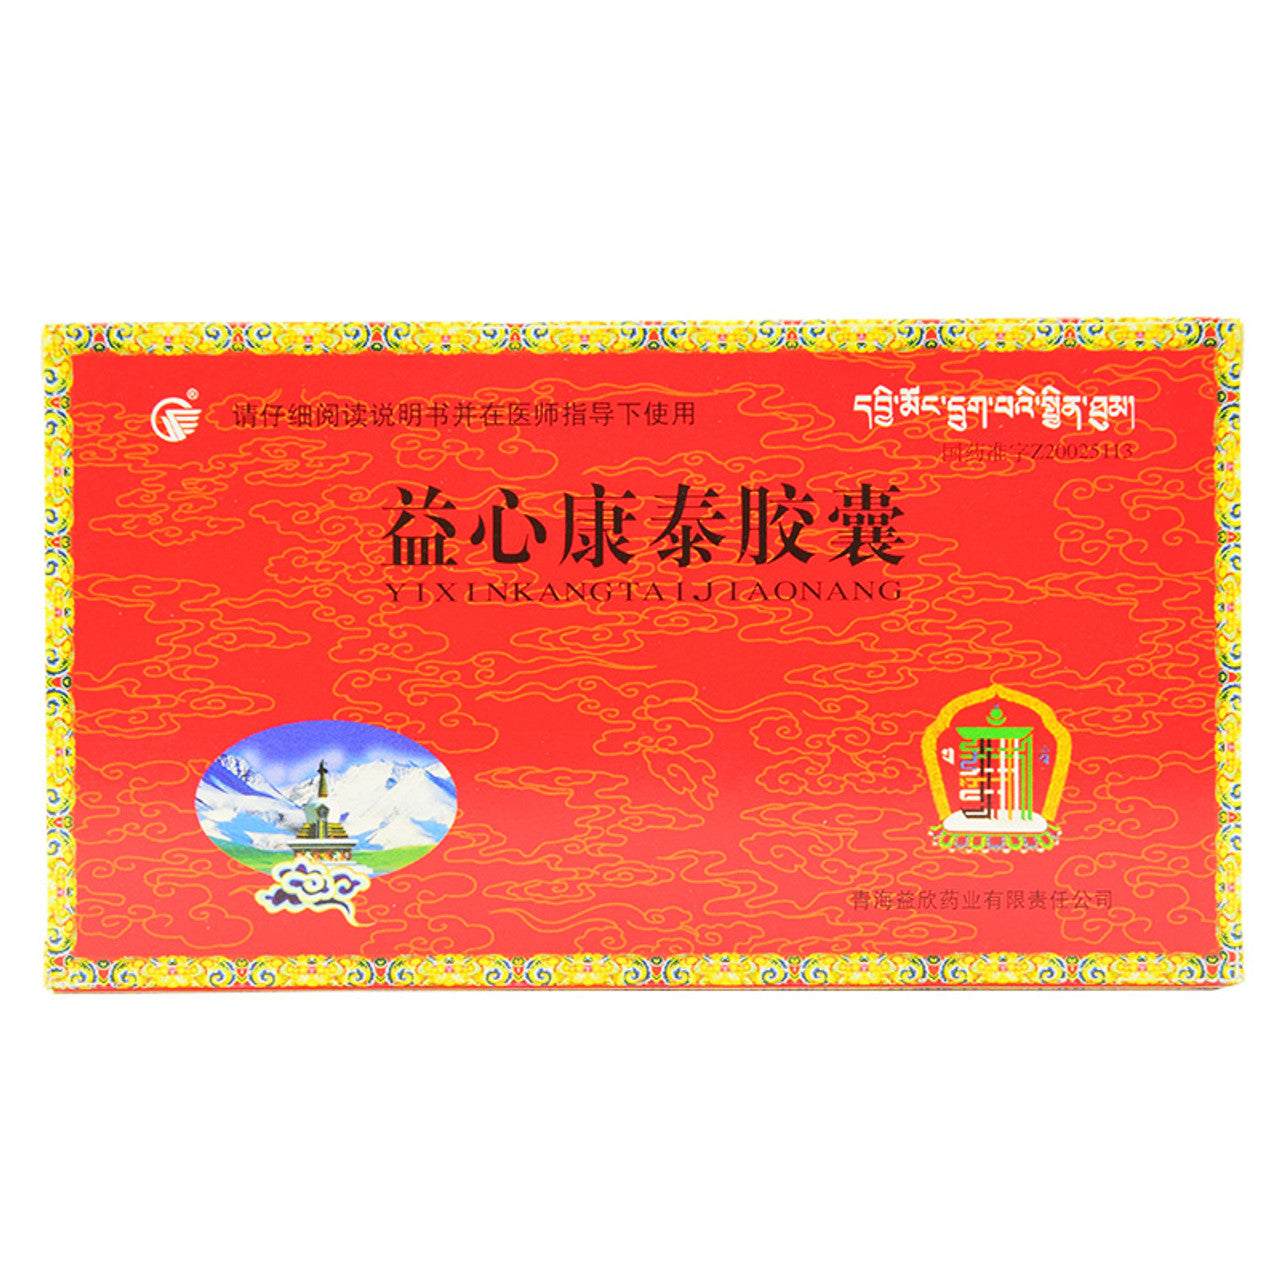 (500mg*20 Capsules*5 boxes/lot). Yixin Kangtai Capsule or Yixin Kangtai Jiaonang for Hyperlipidemia. Yi Xin Kang Tai Jiao Nang